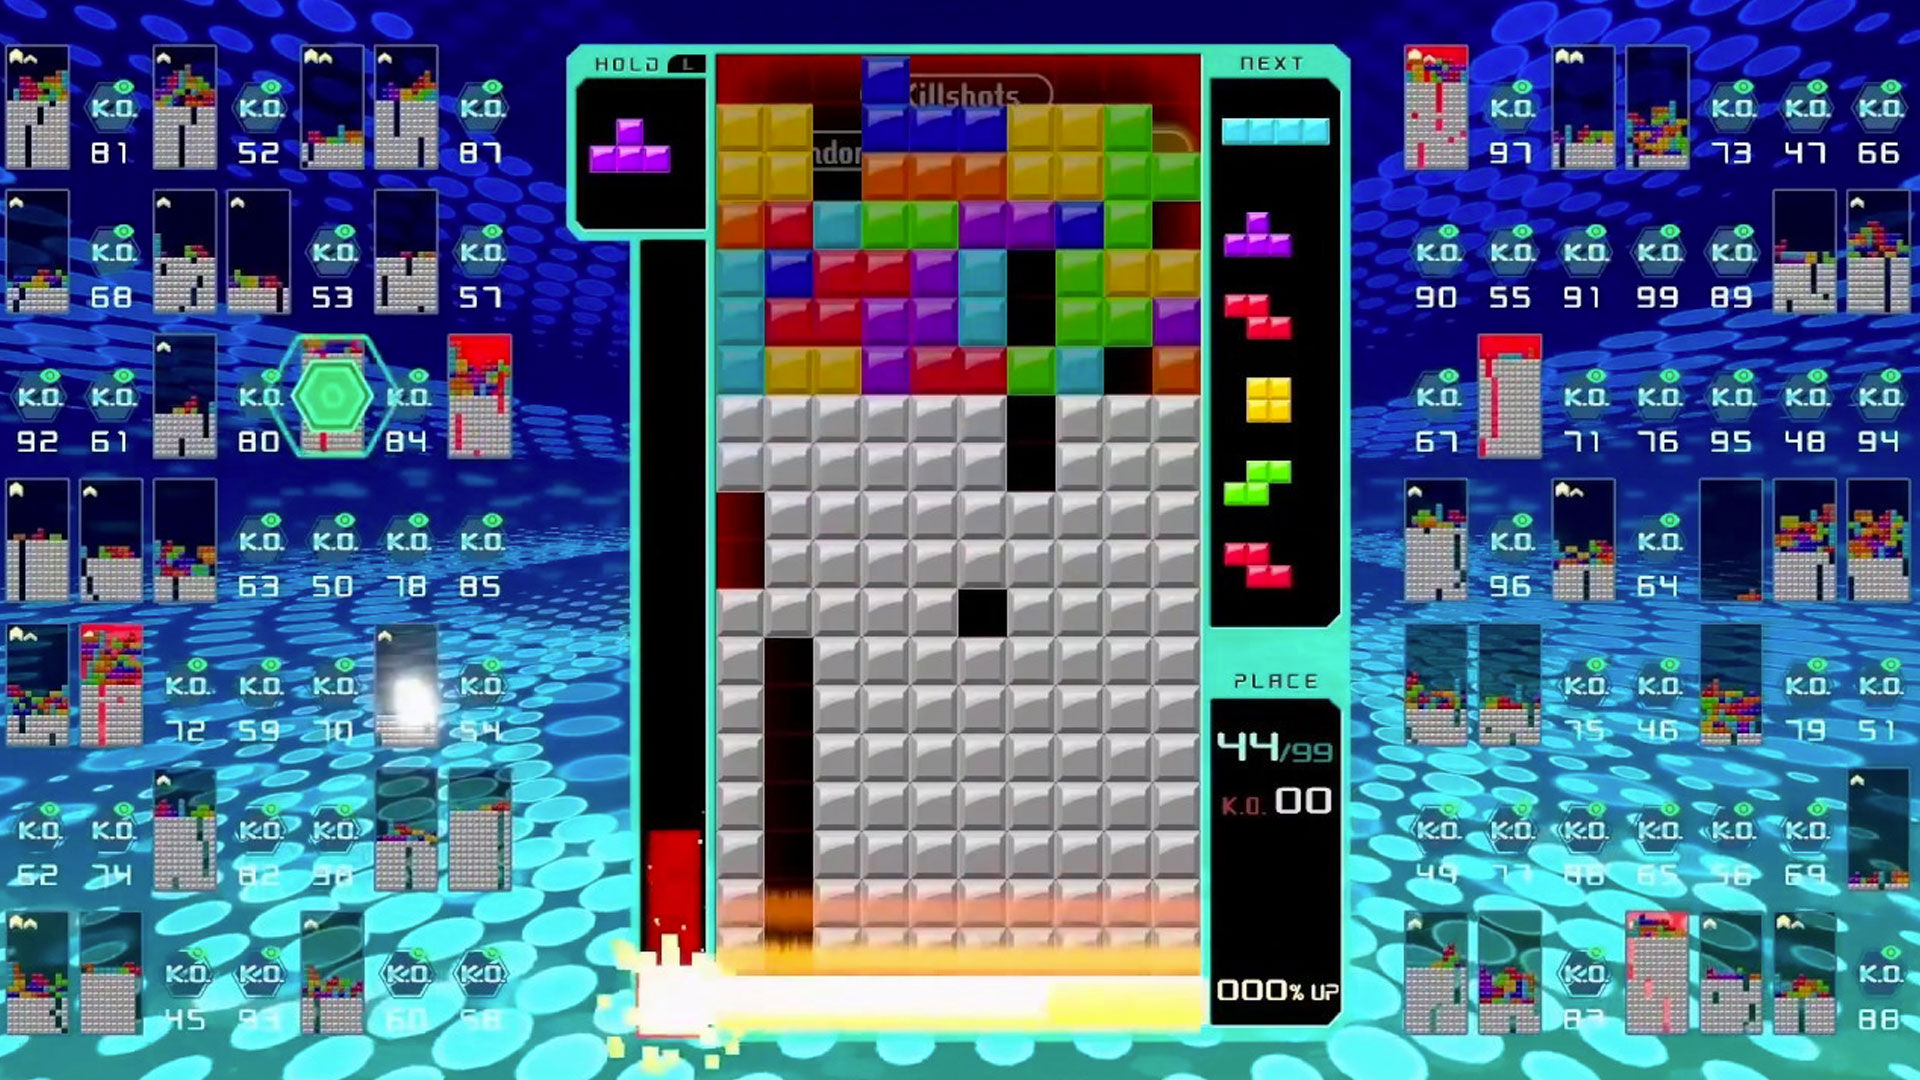 Mid-battle in Tetris 99